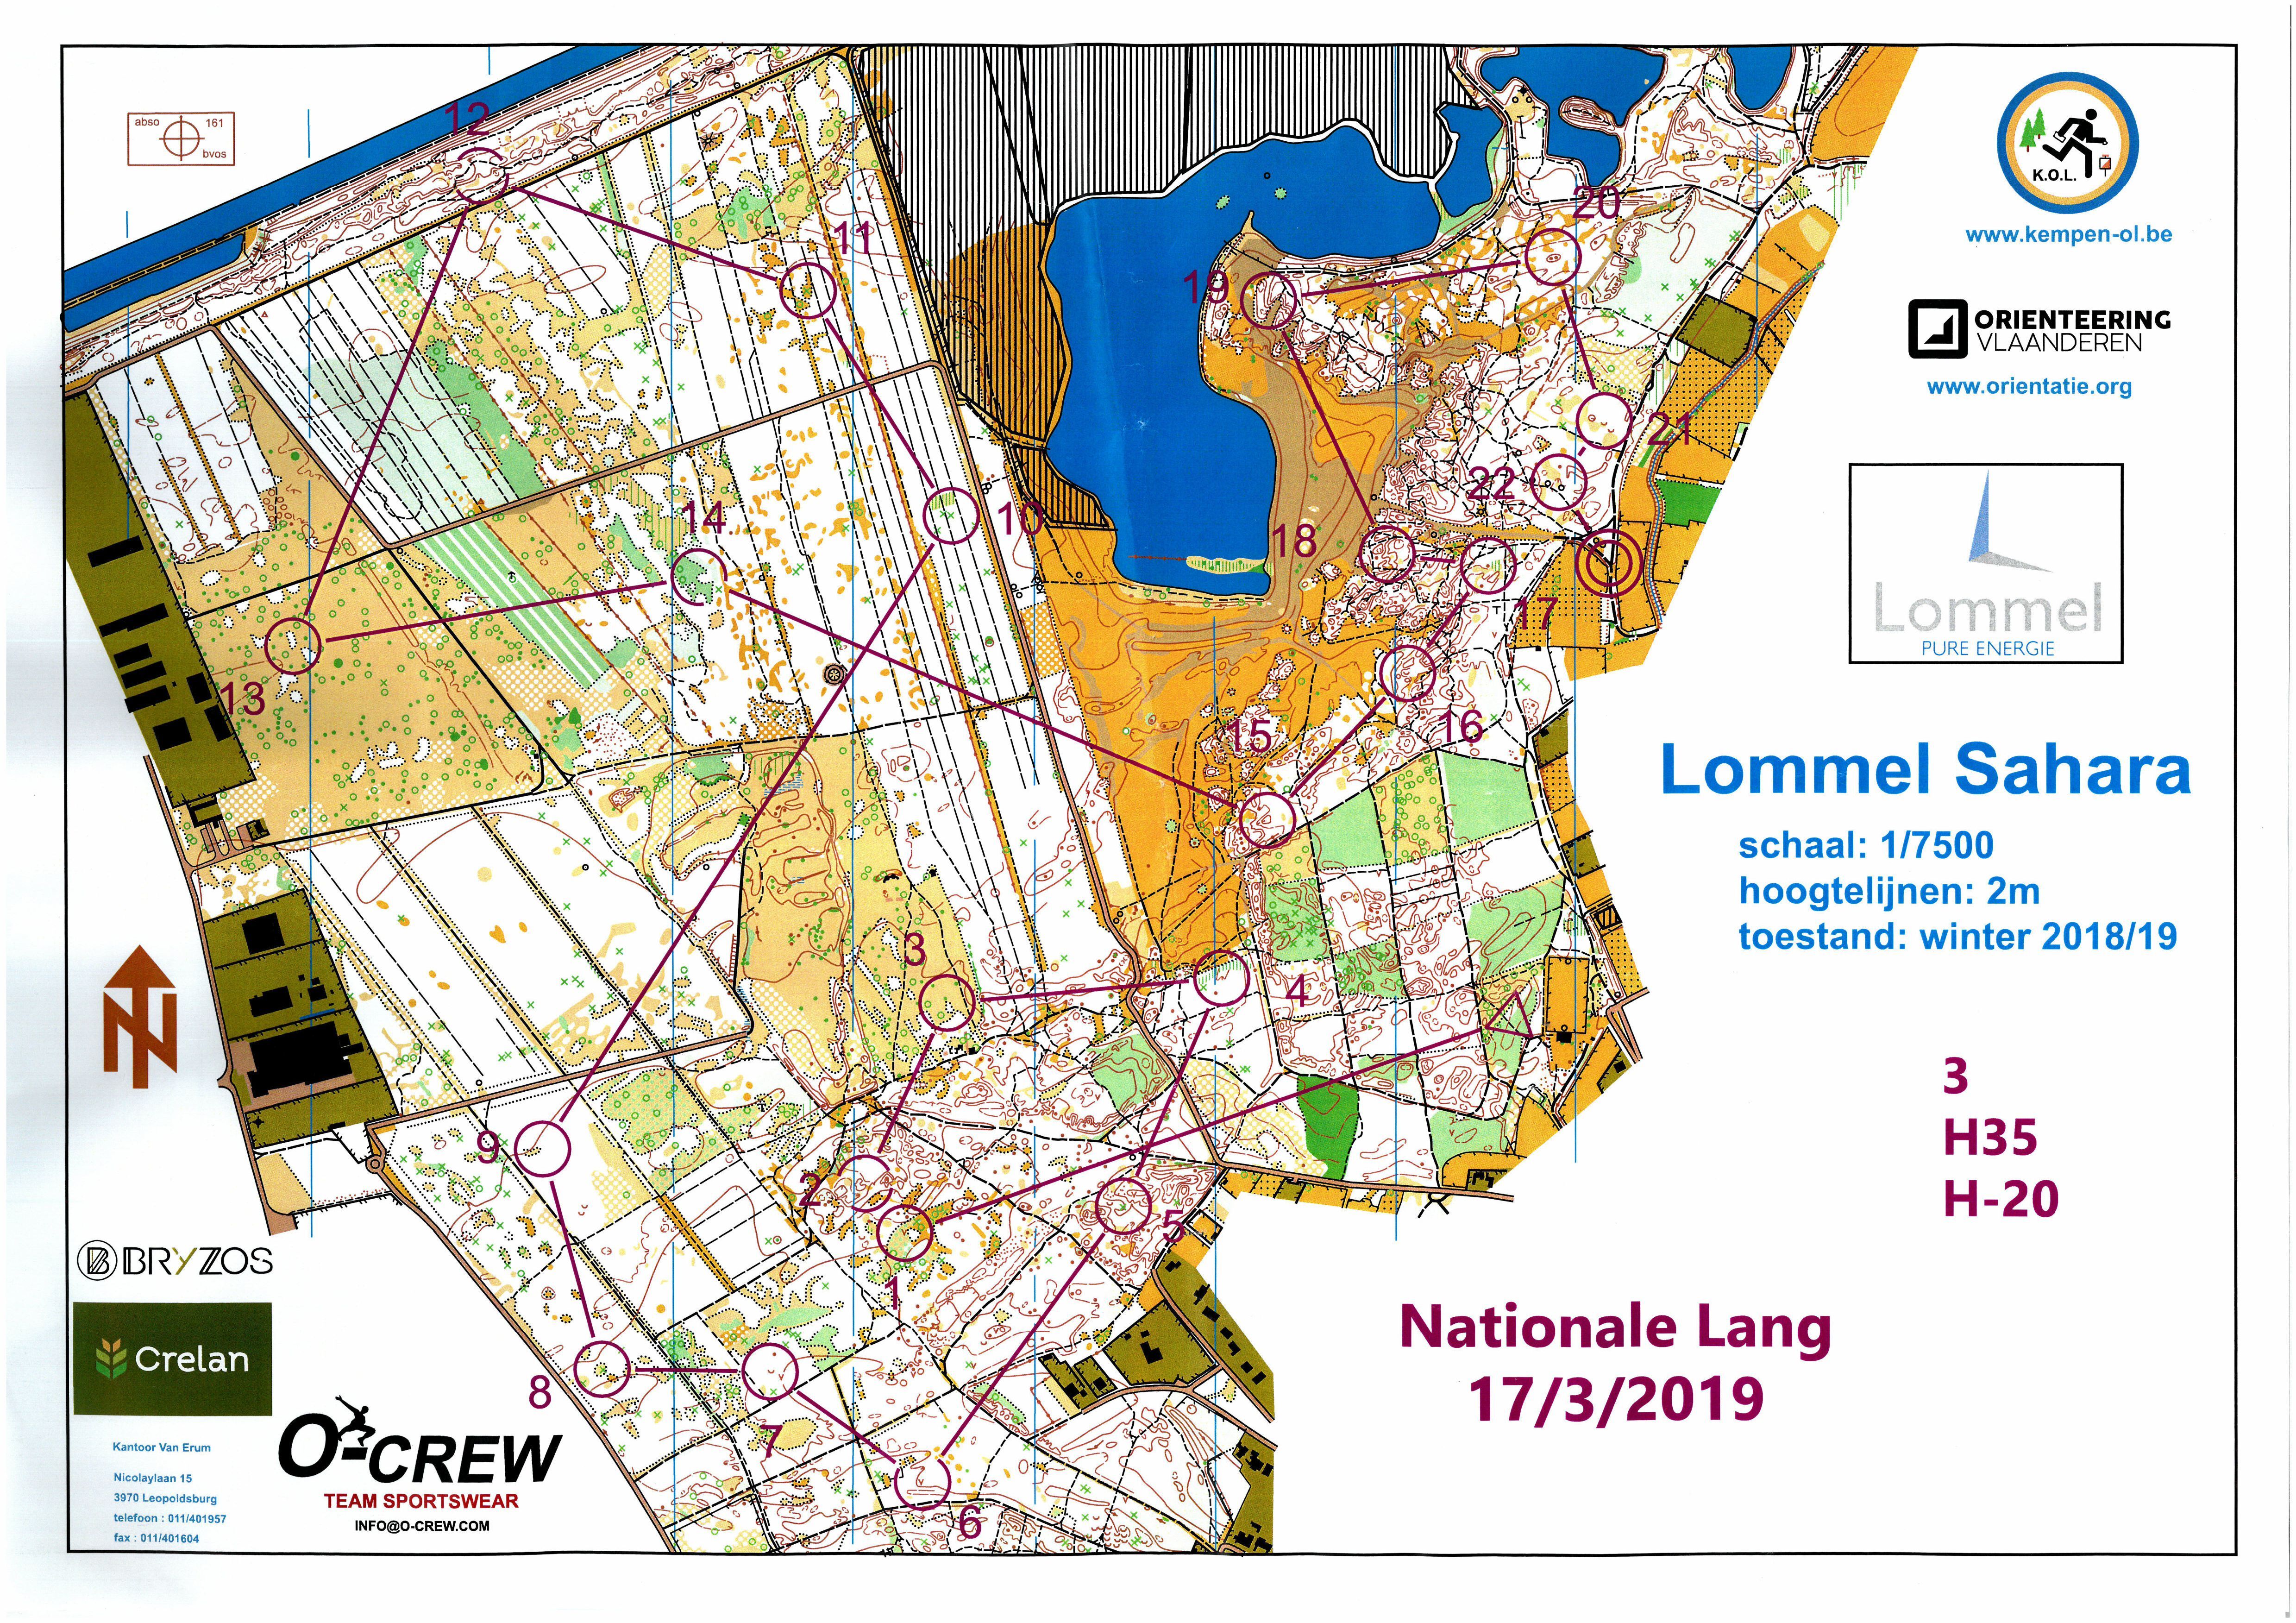 Nationale LD Lommel (17-03-2019)